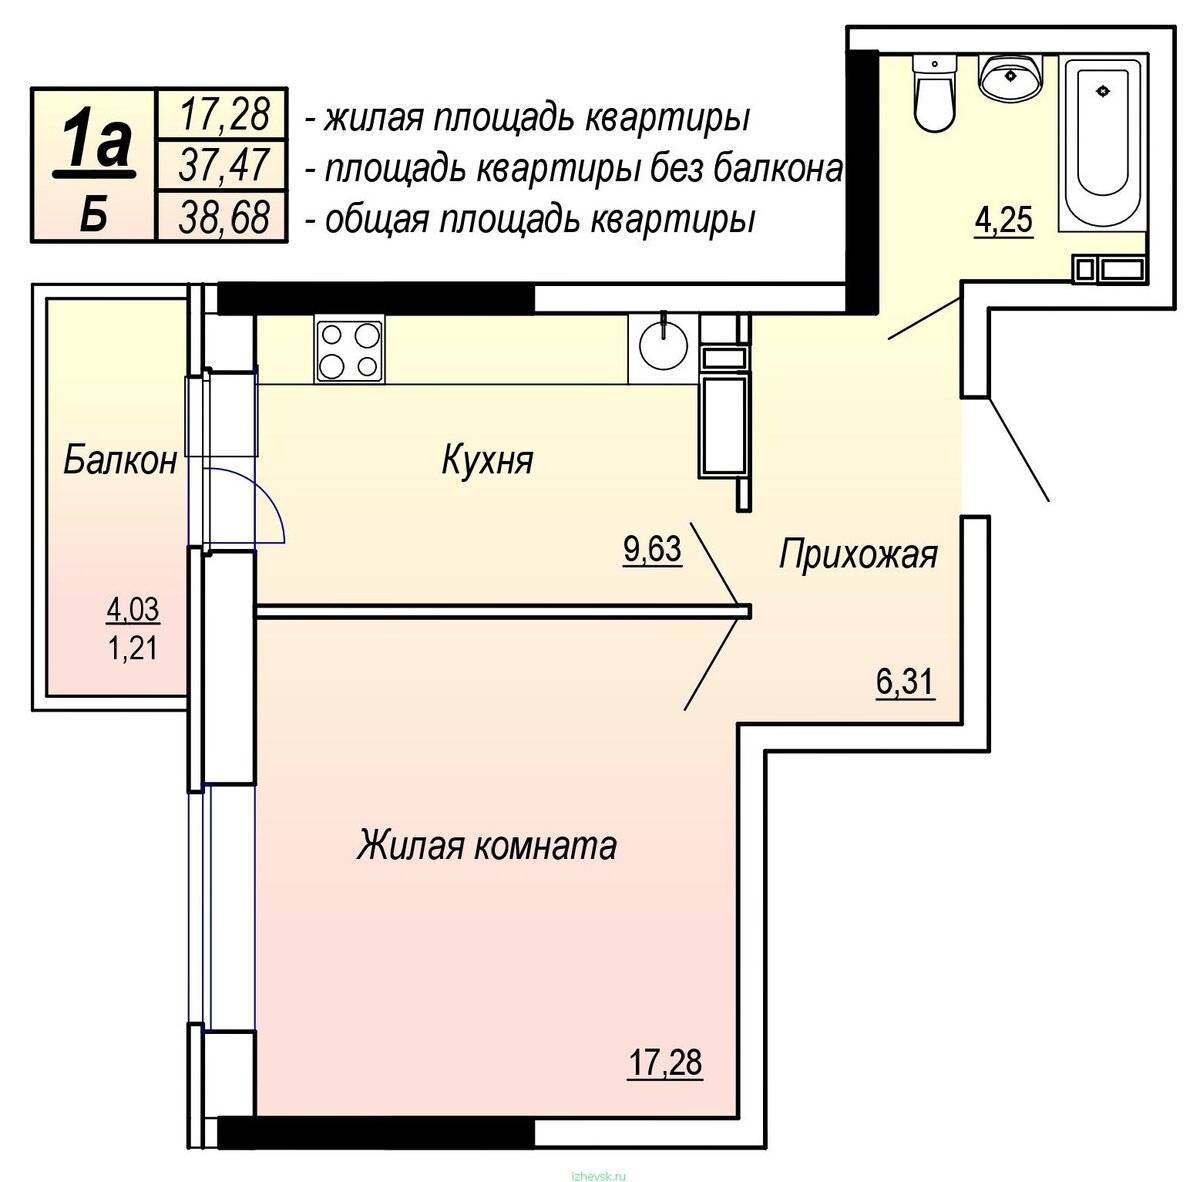 Общая площадь квартиры: что входит и не входит, как рассчитать правильно